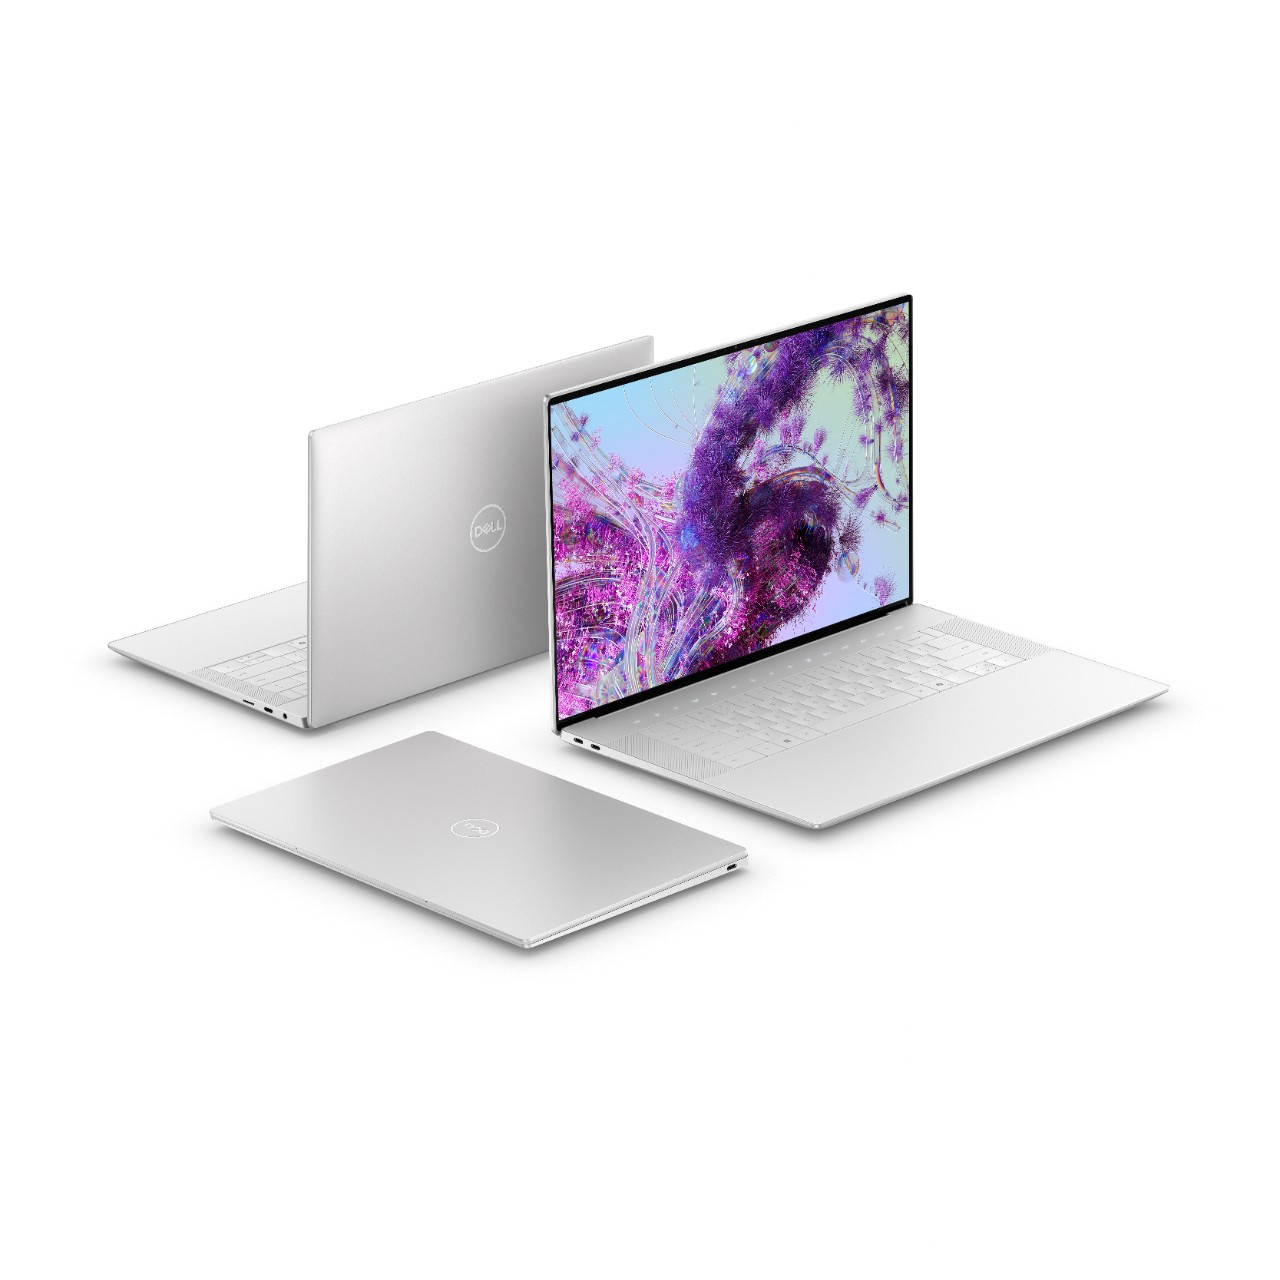 Najnowsze laptopy Dell XPS już w przedsprzedaży! Sprawdź ich możliwości!